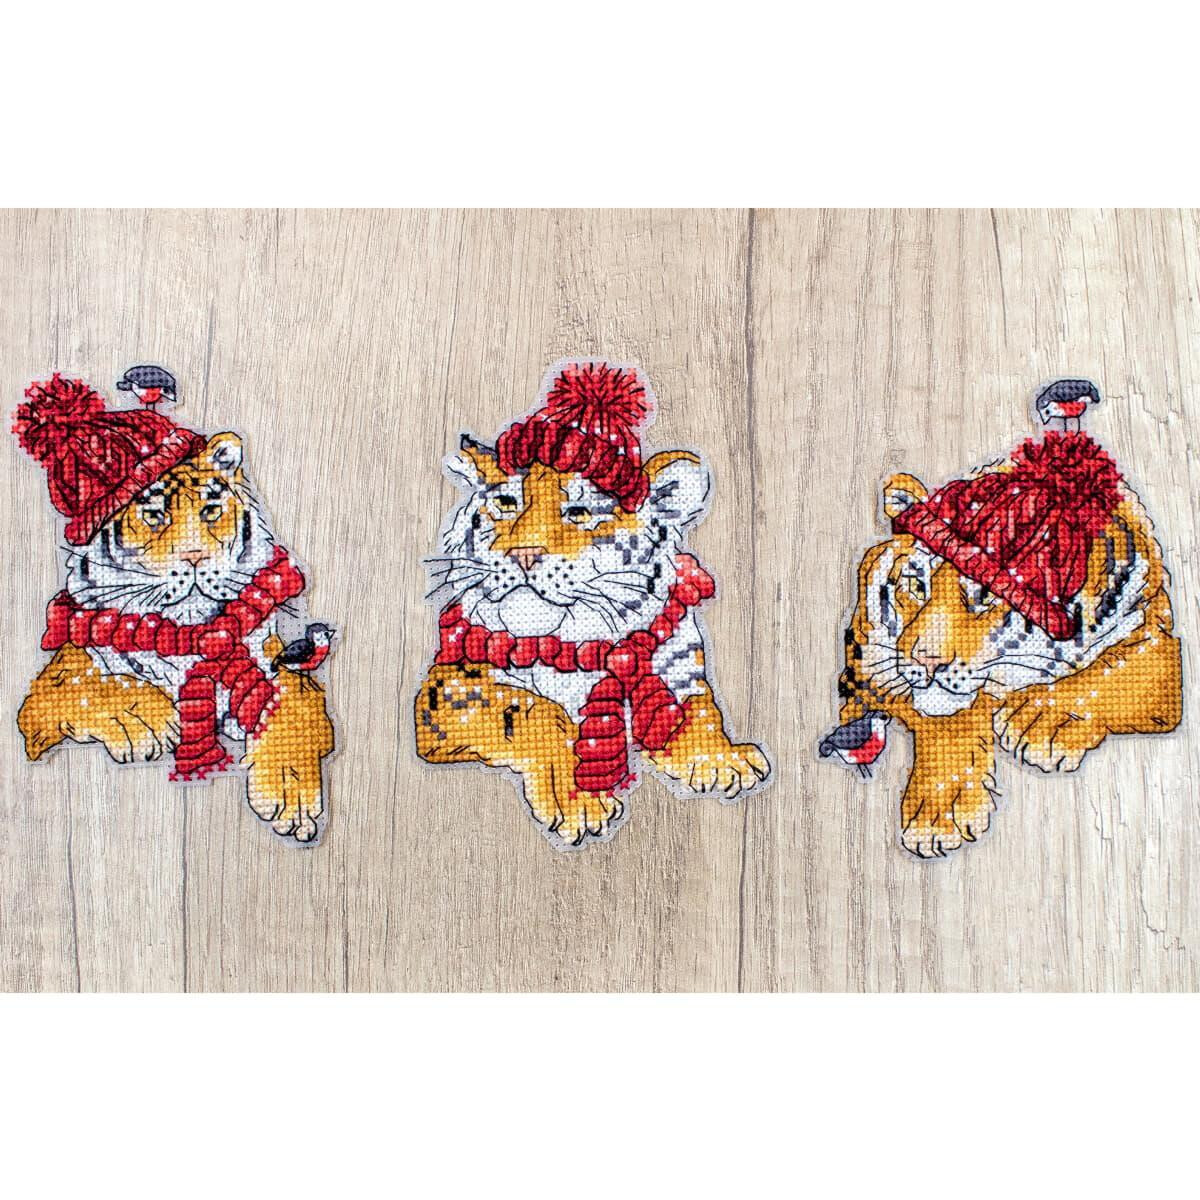 Drei Tigerjunge im Zeichentrickstil tragen rote...